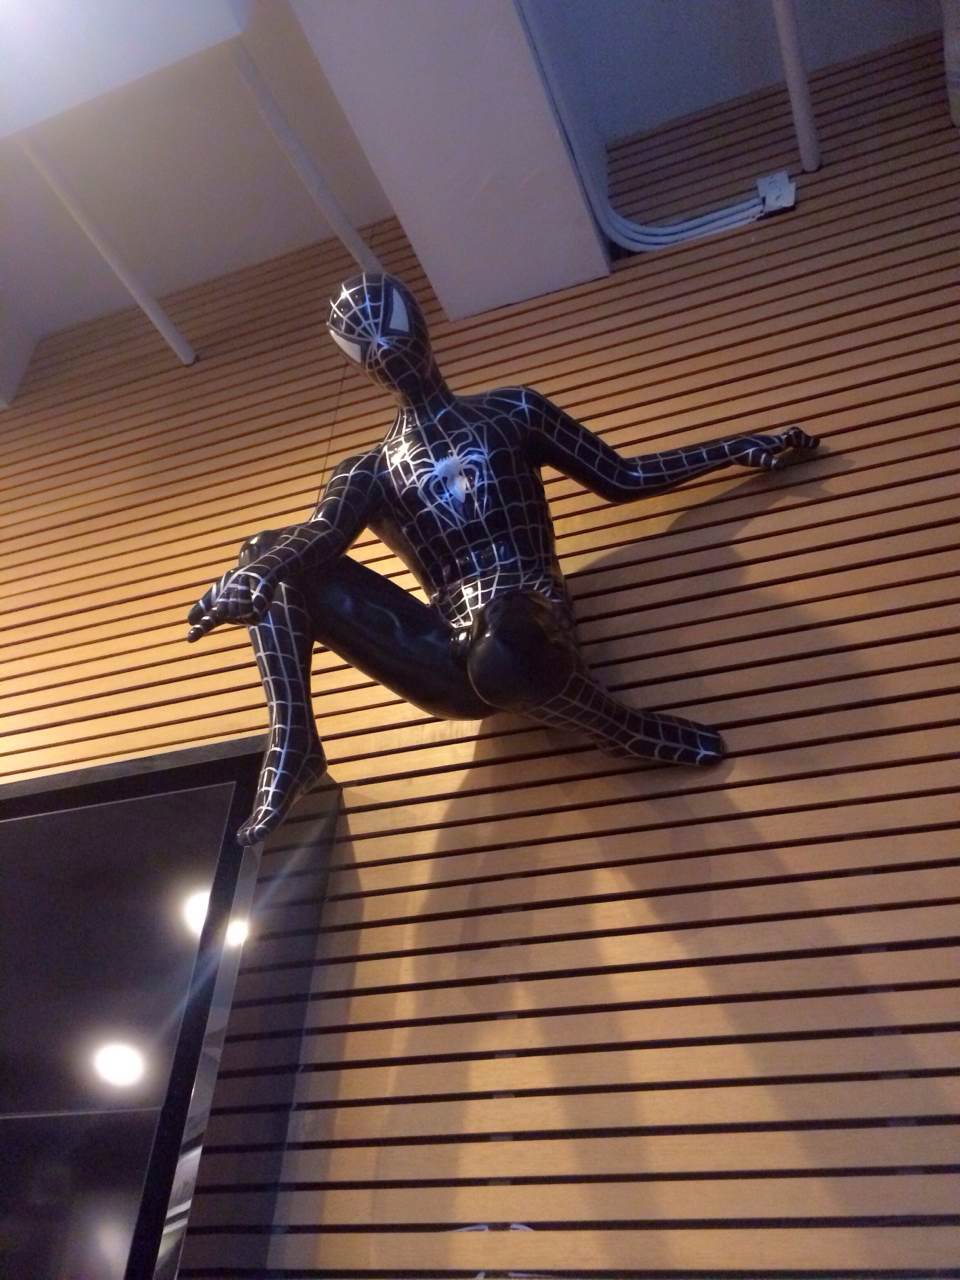 玻璃鋼蜘蛛俠雕塑